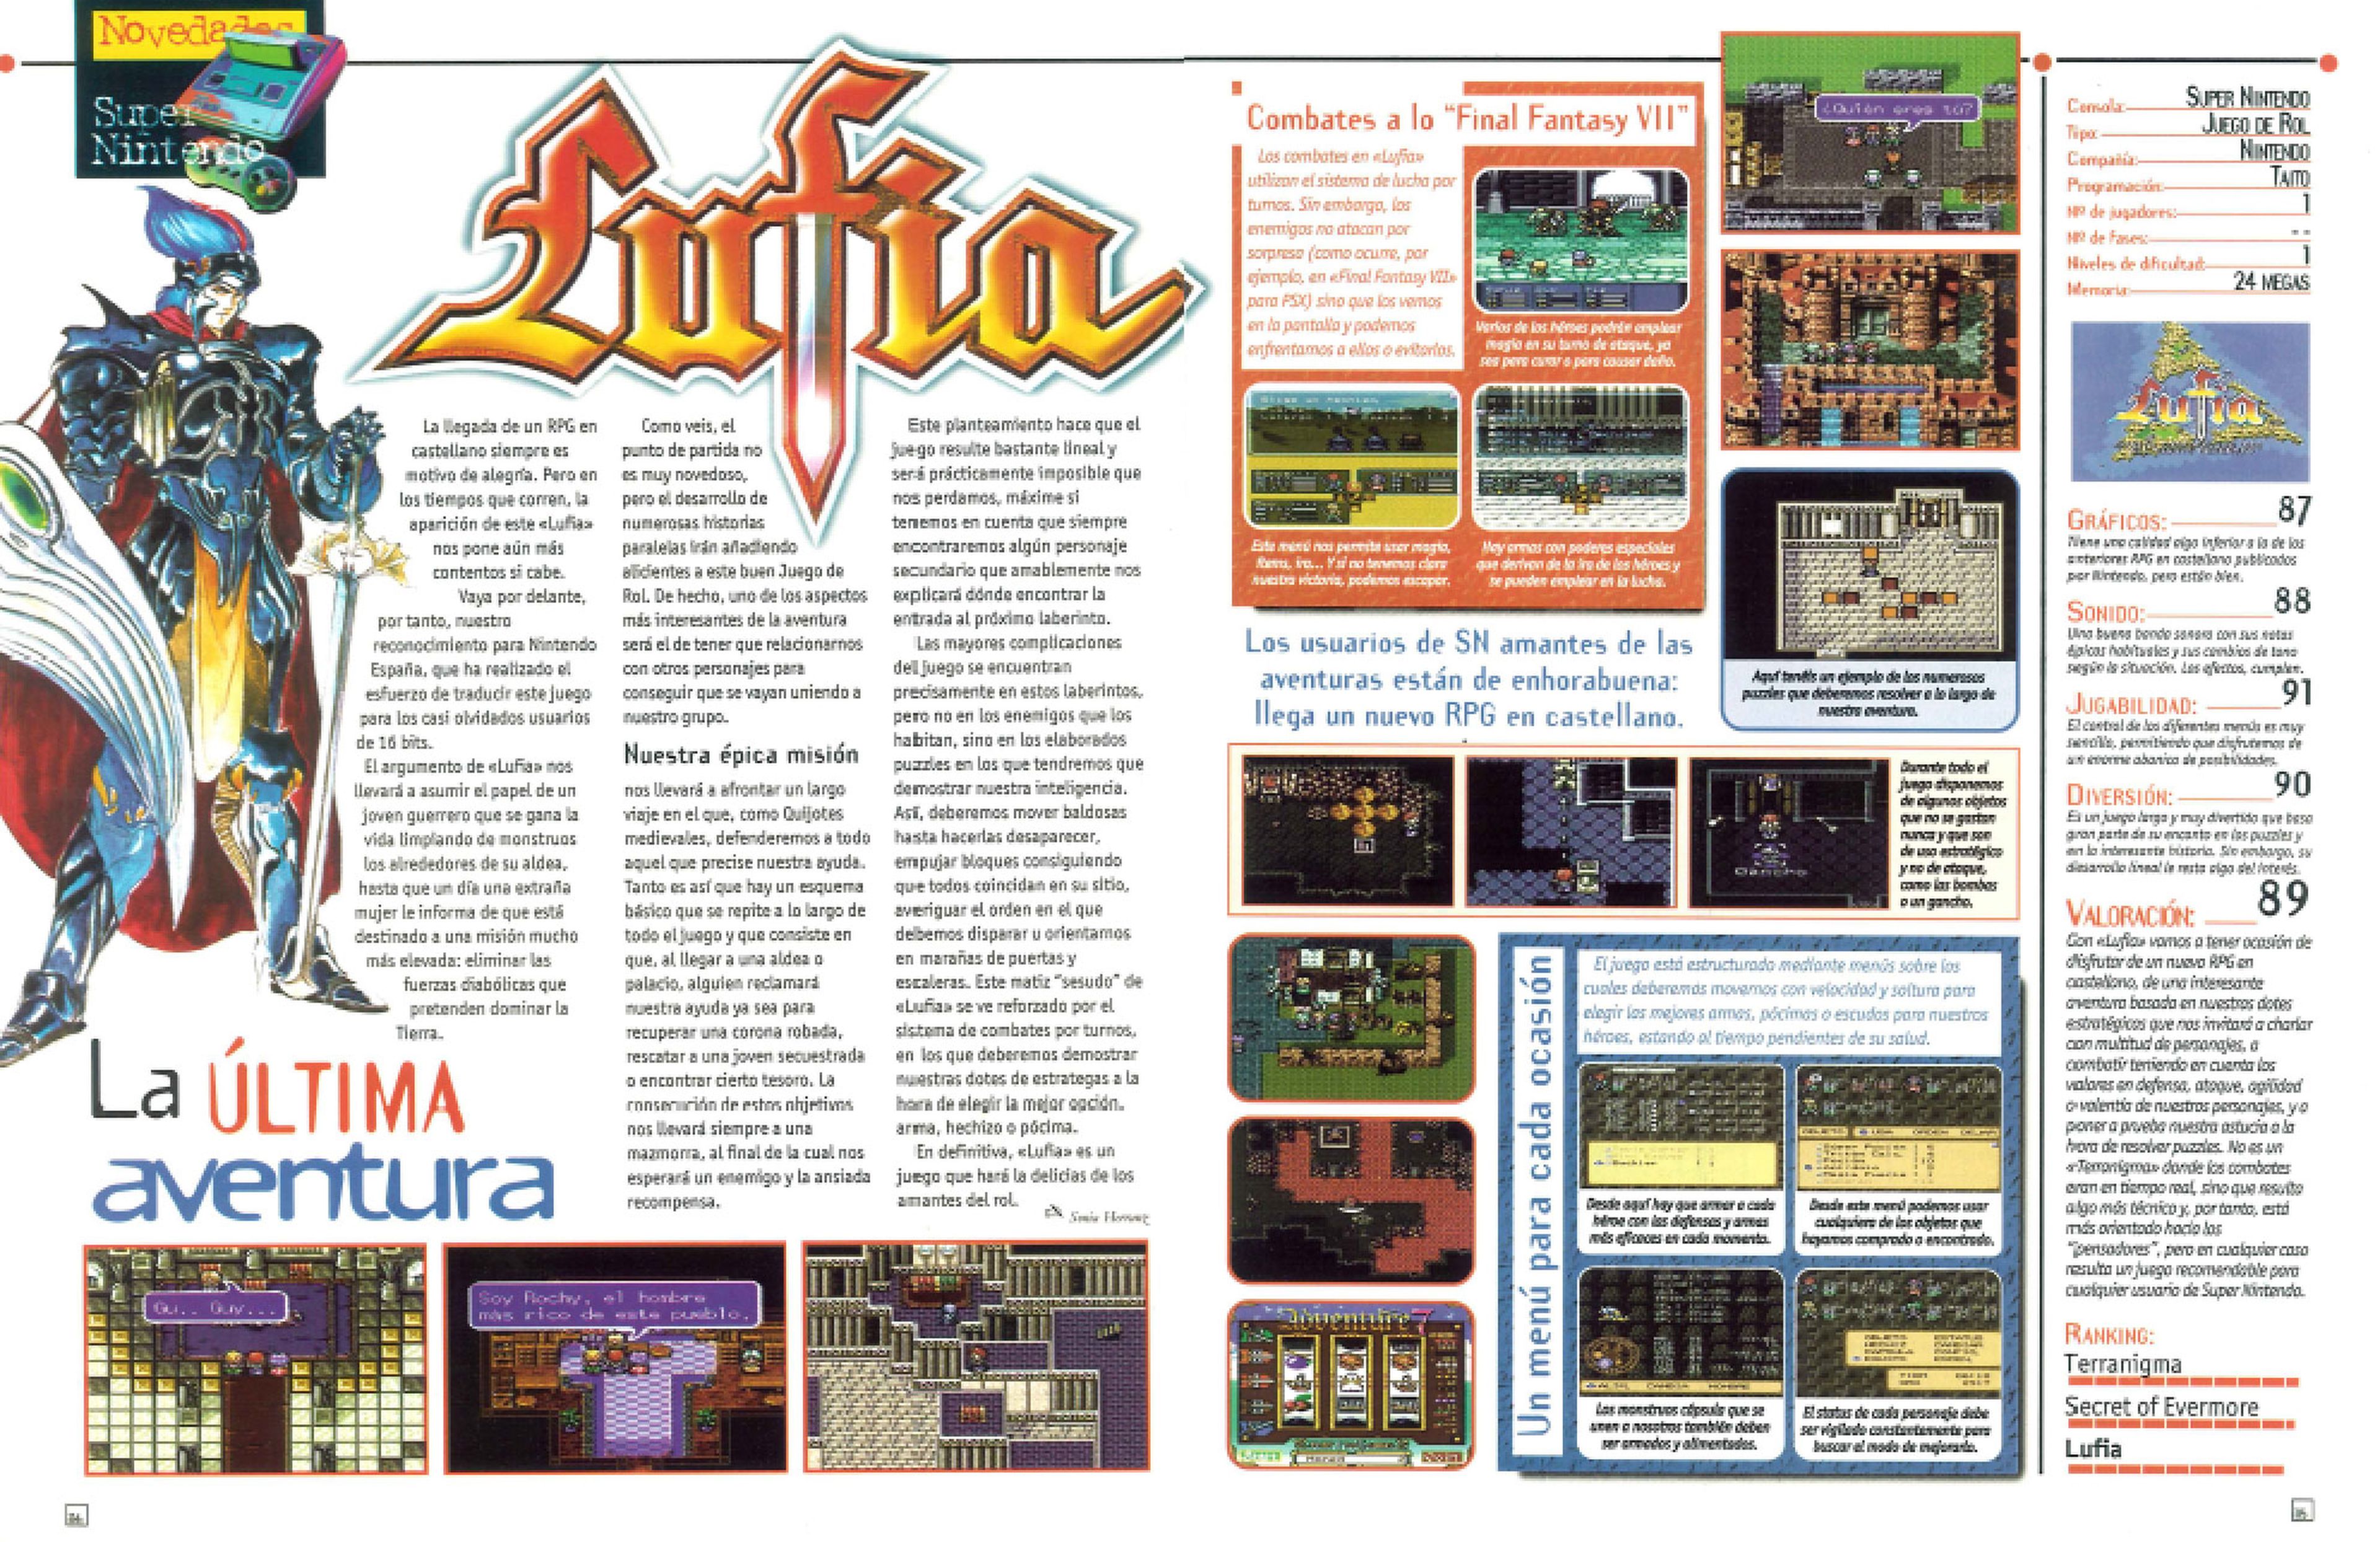 Análisis Lufia (SNES) en Hobby Consolas 80